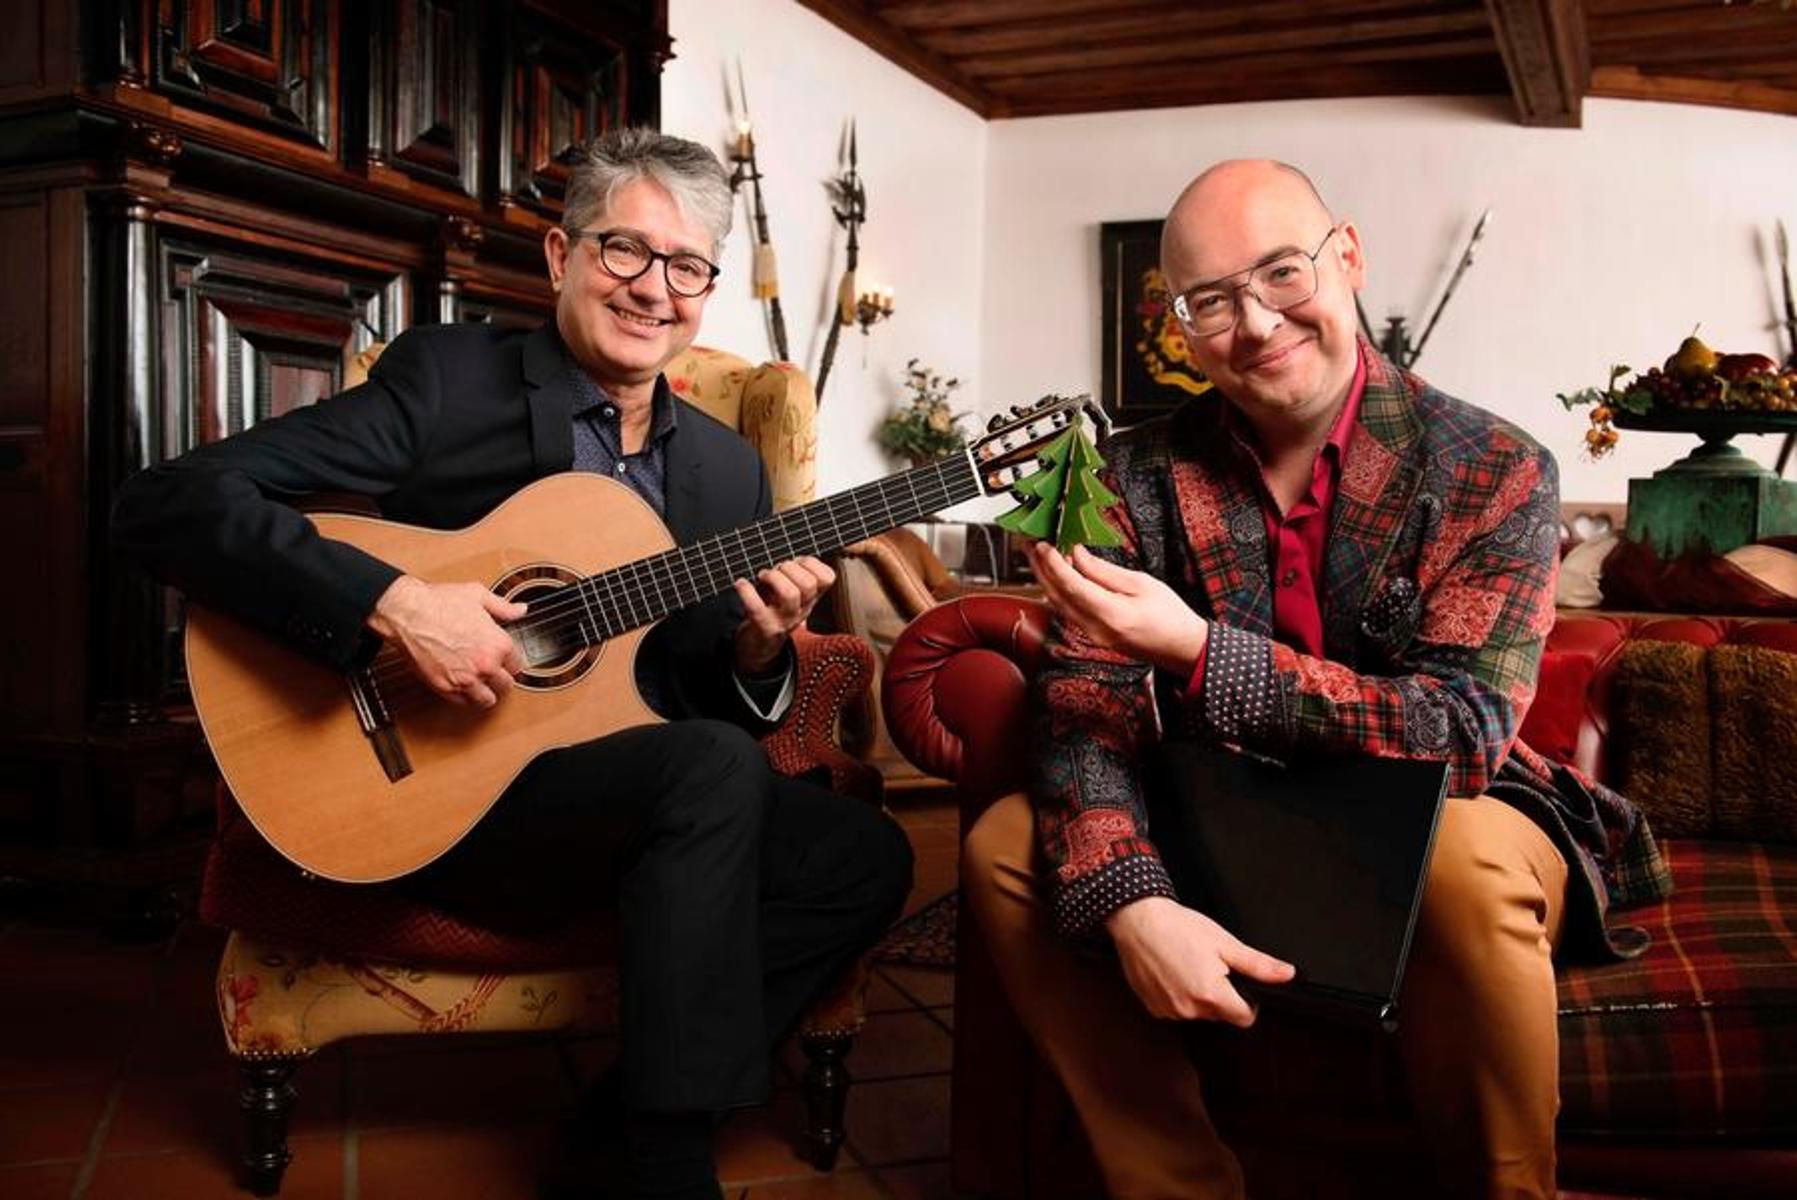 Der bekannte BR-Moderator Tobias Föhrenbach und der Gitarrist Stefan Grasse geben Musikalisches & Literarisches zum Advent.